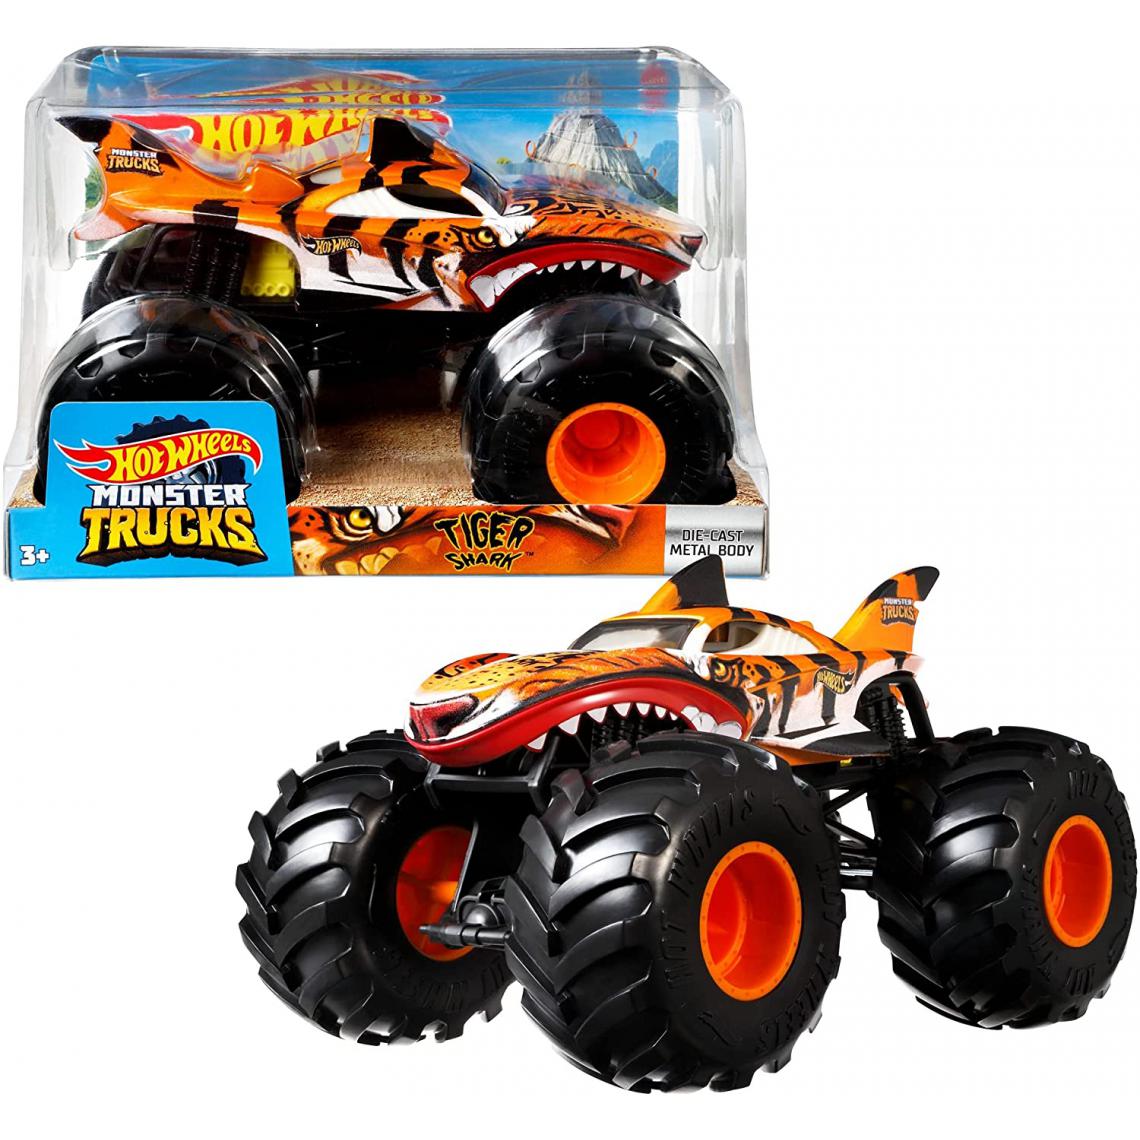 Hot Wheels - Monster Trucks Tiger Shark 1:24 - Voiture de collection miniature